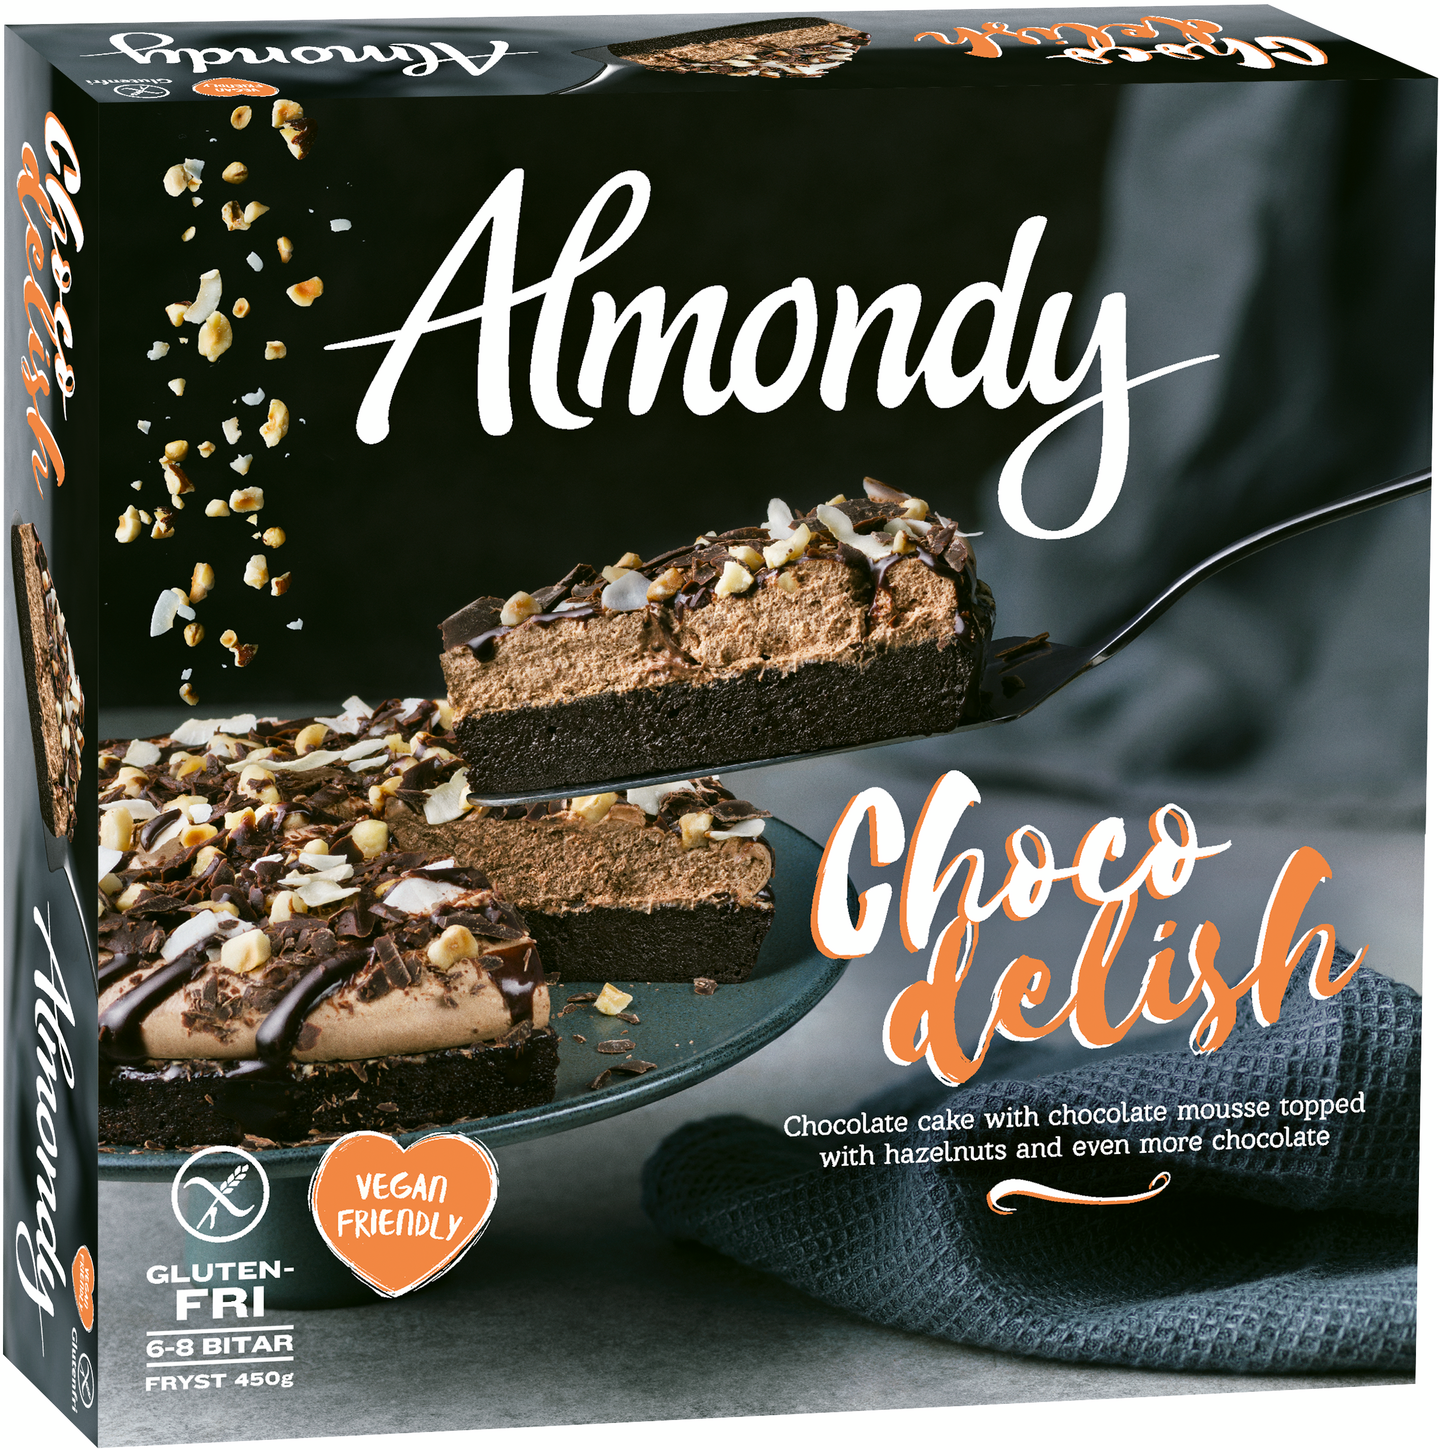 Almondy choco delish kakku 450g pakaste — HoReCa-tukku Kespro